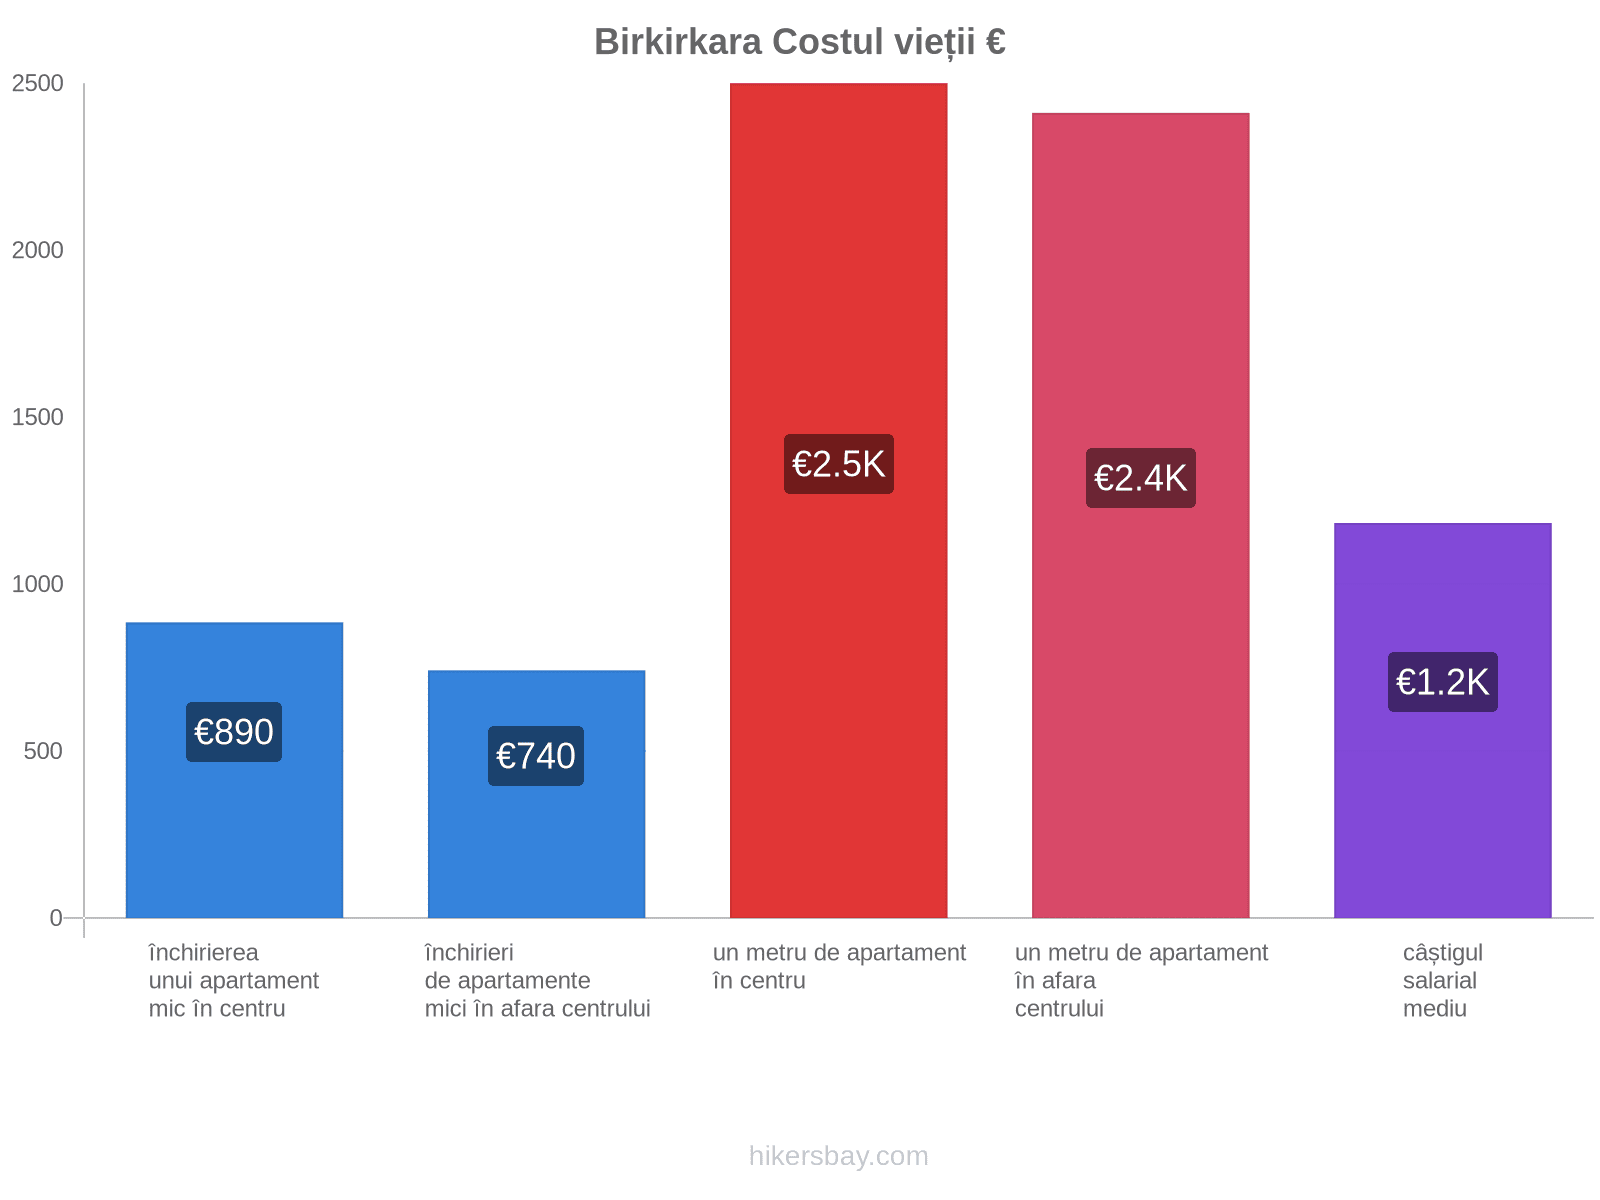 Birkirkara costul vieții hikersbay.com